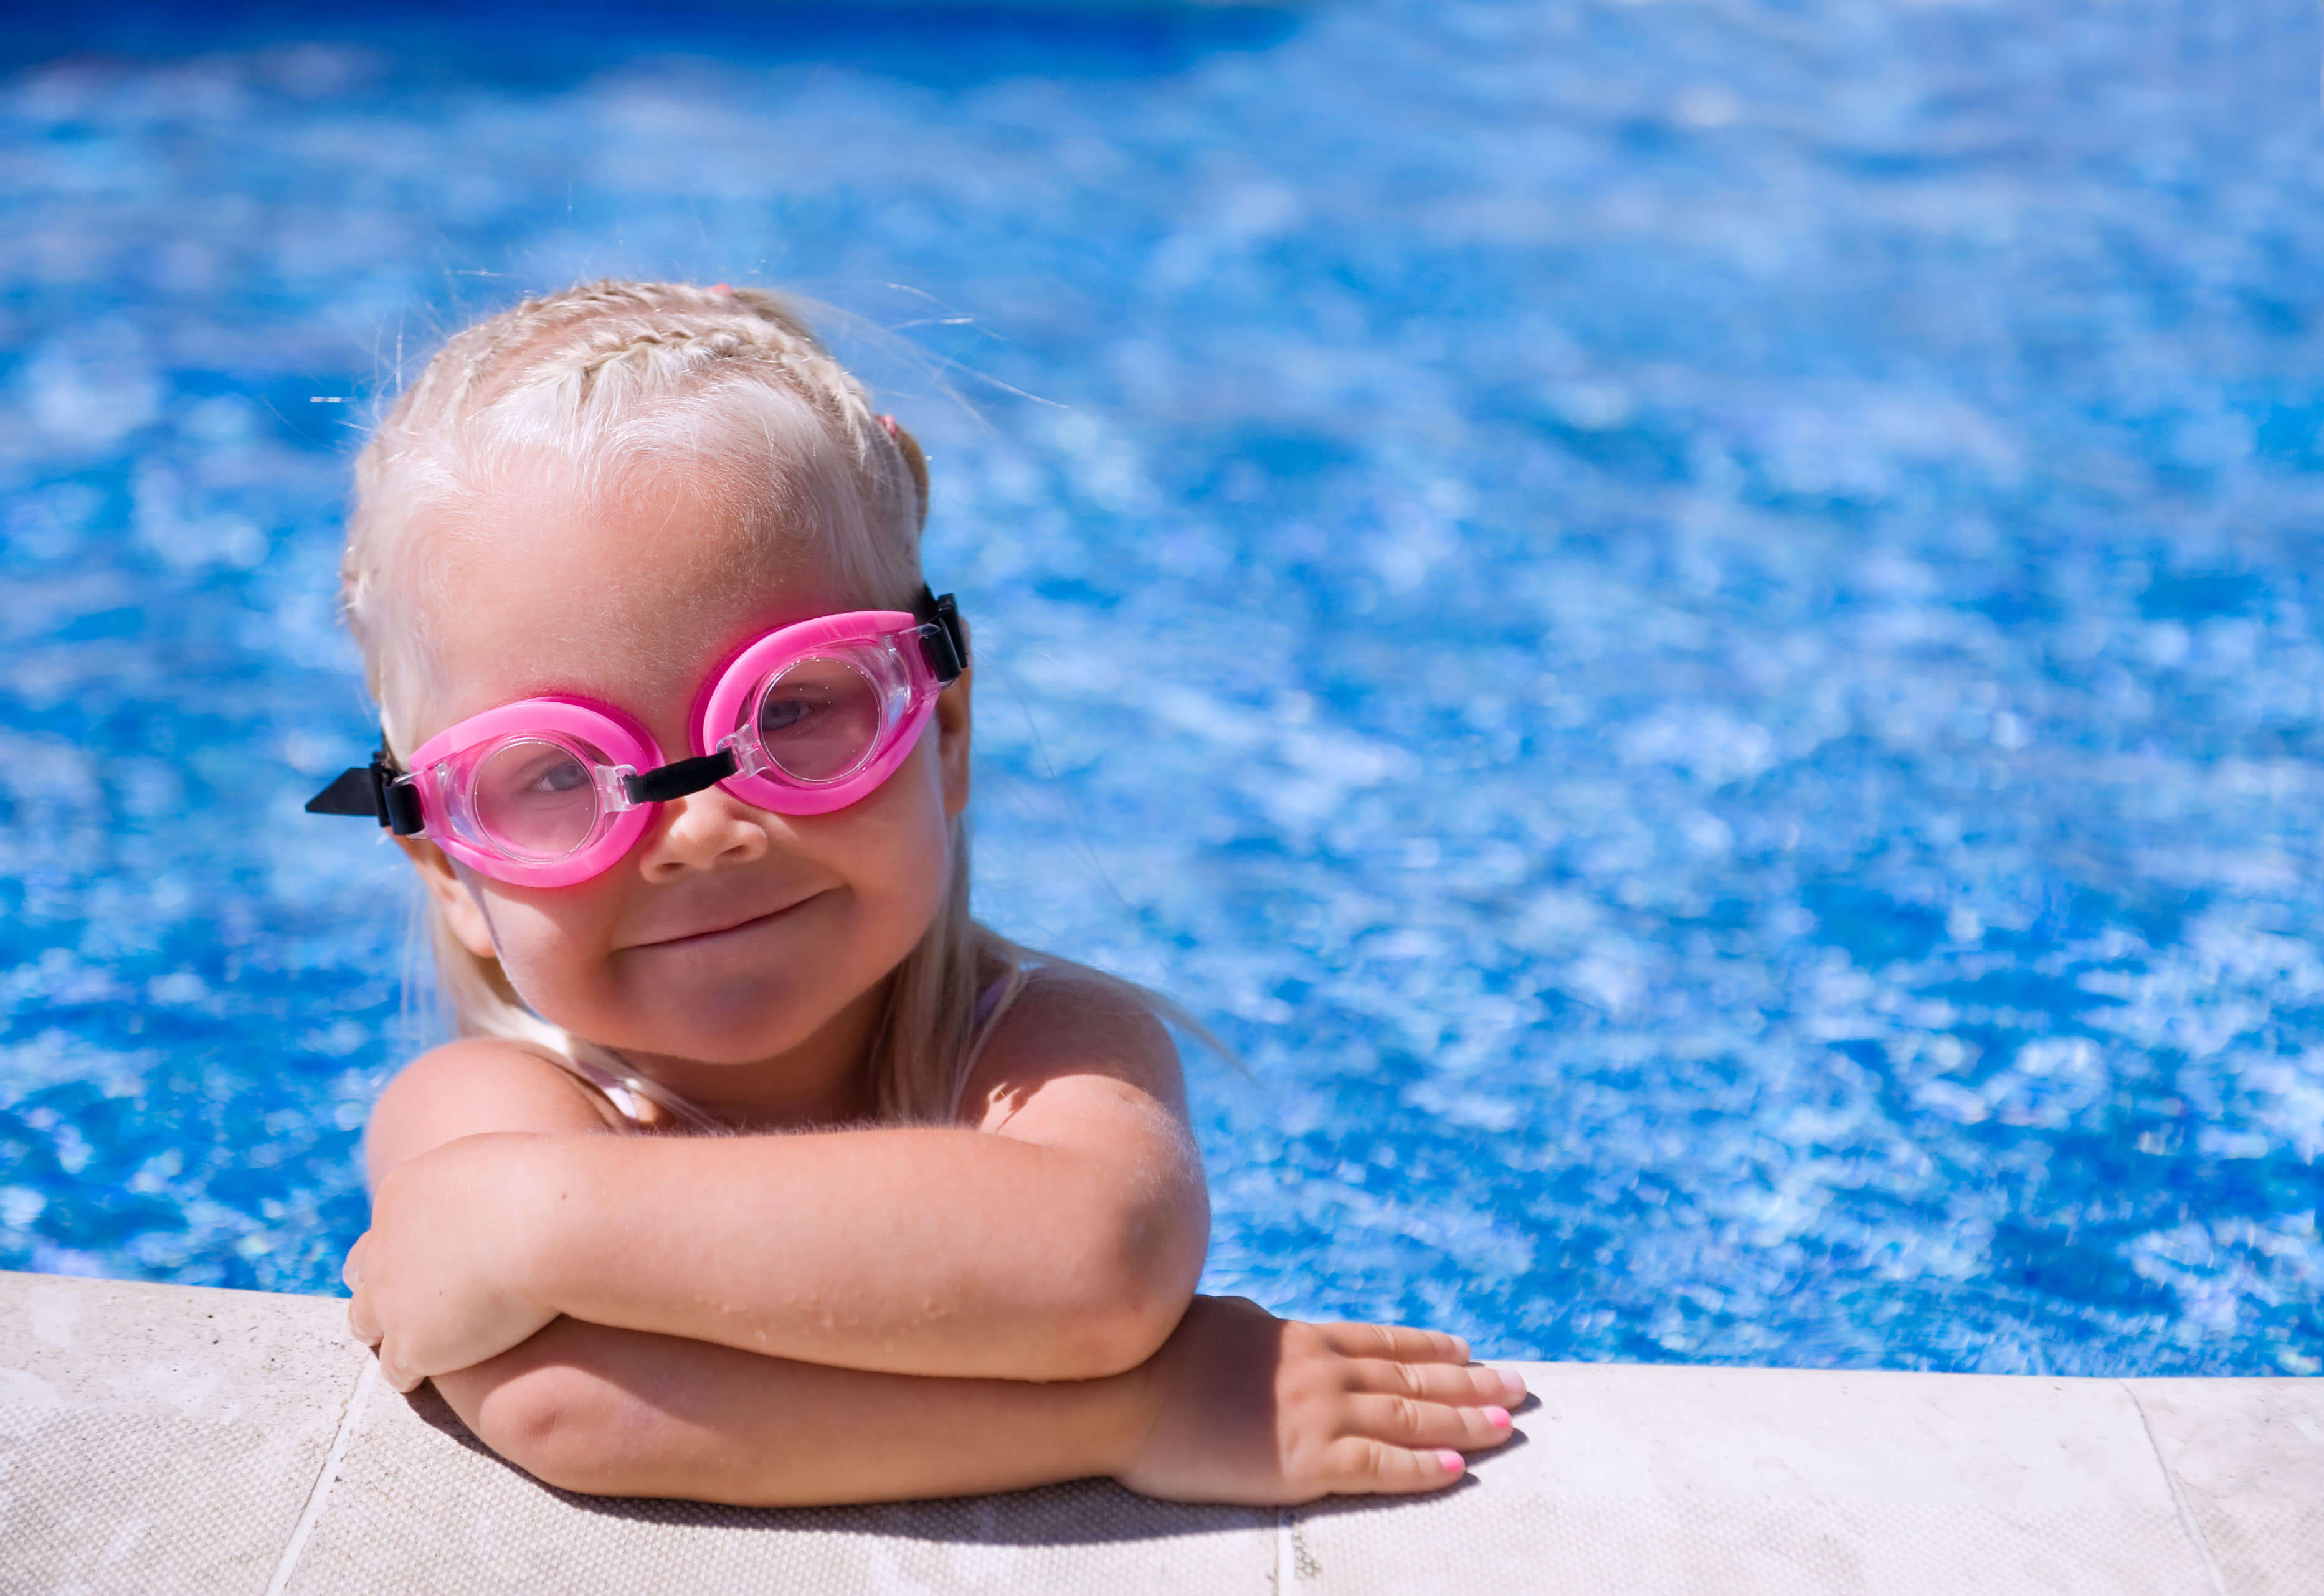 Обучение плаванию для детей до 5 лет.